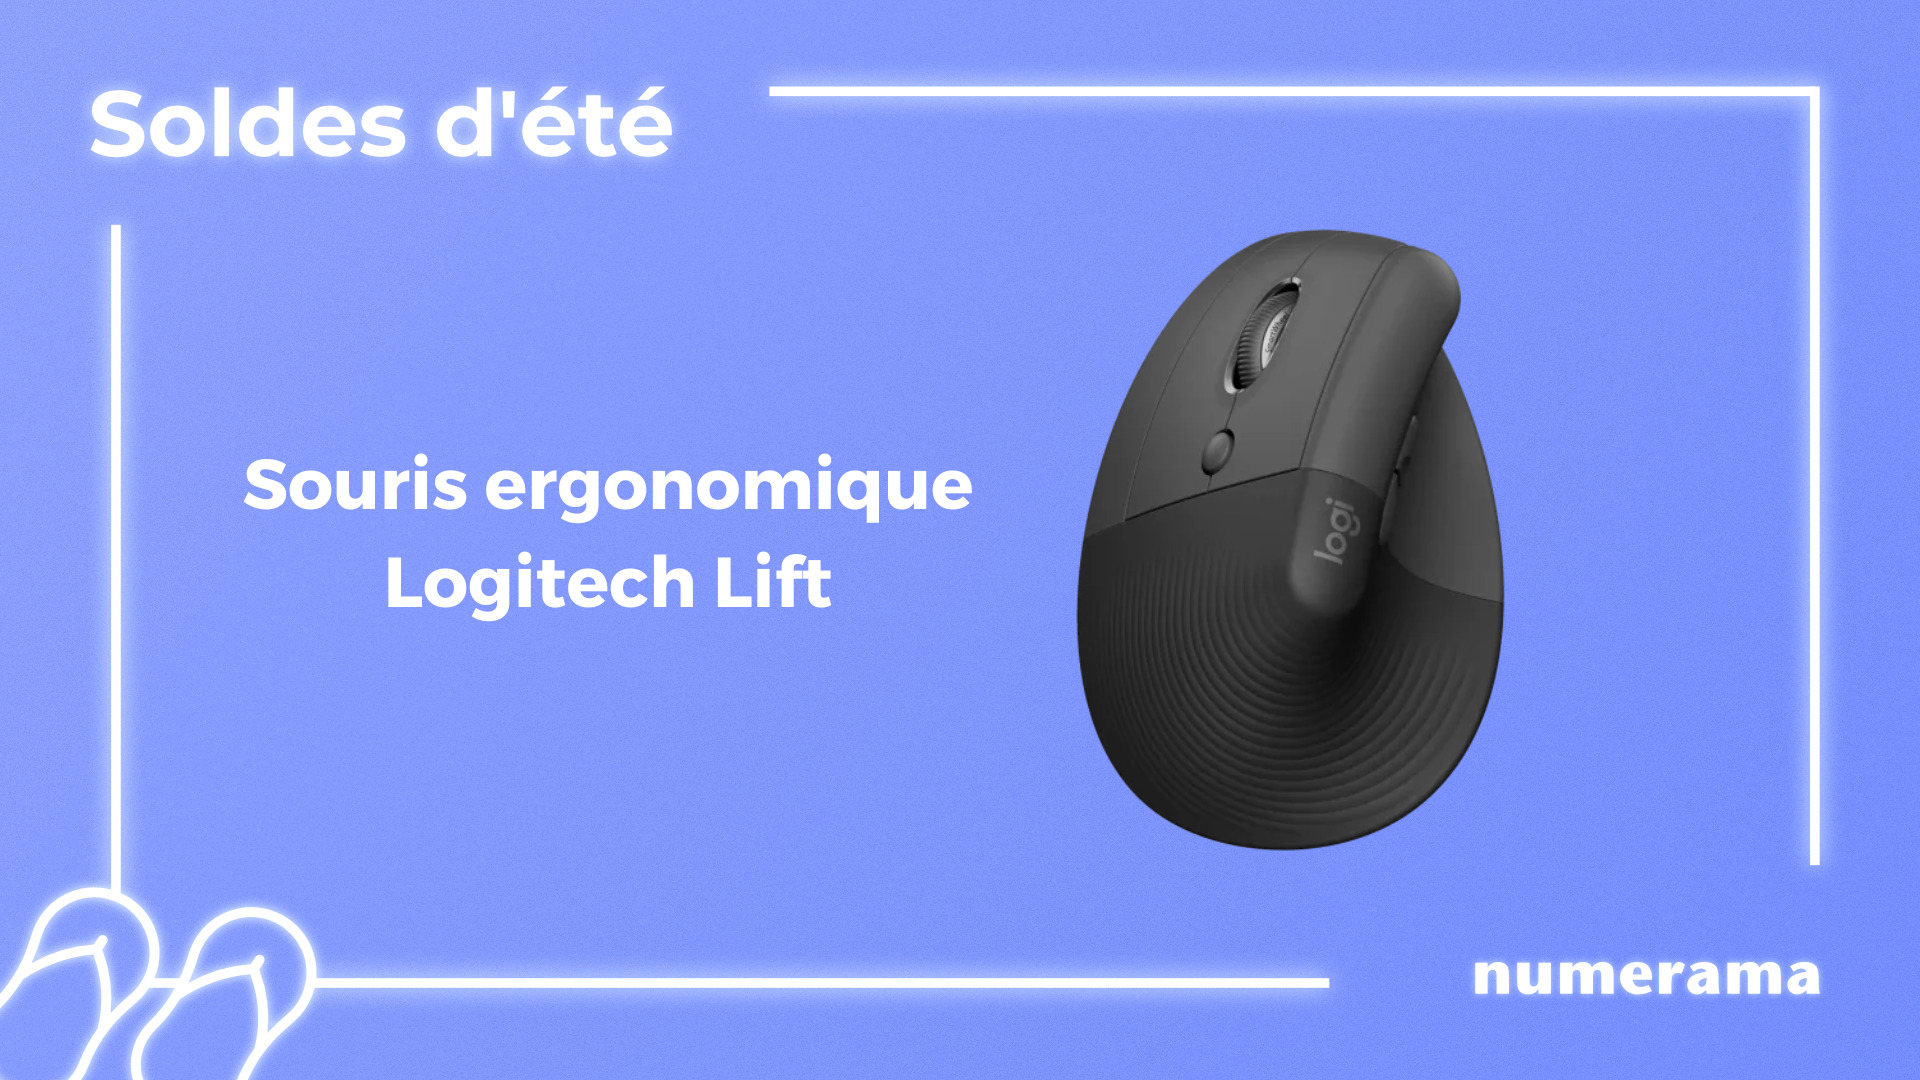 Cette souris ergonomique de Logitech est en promo pour les soldes